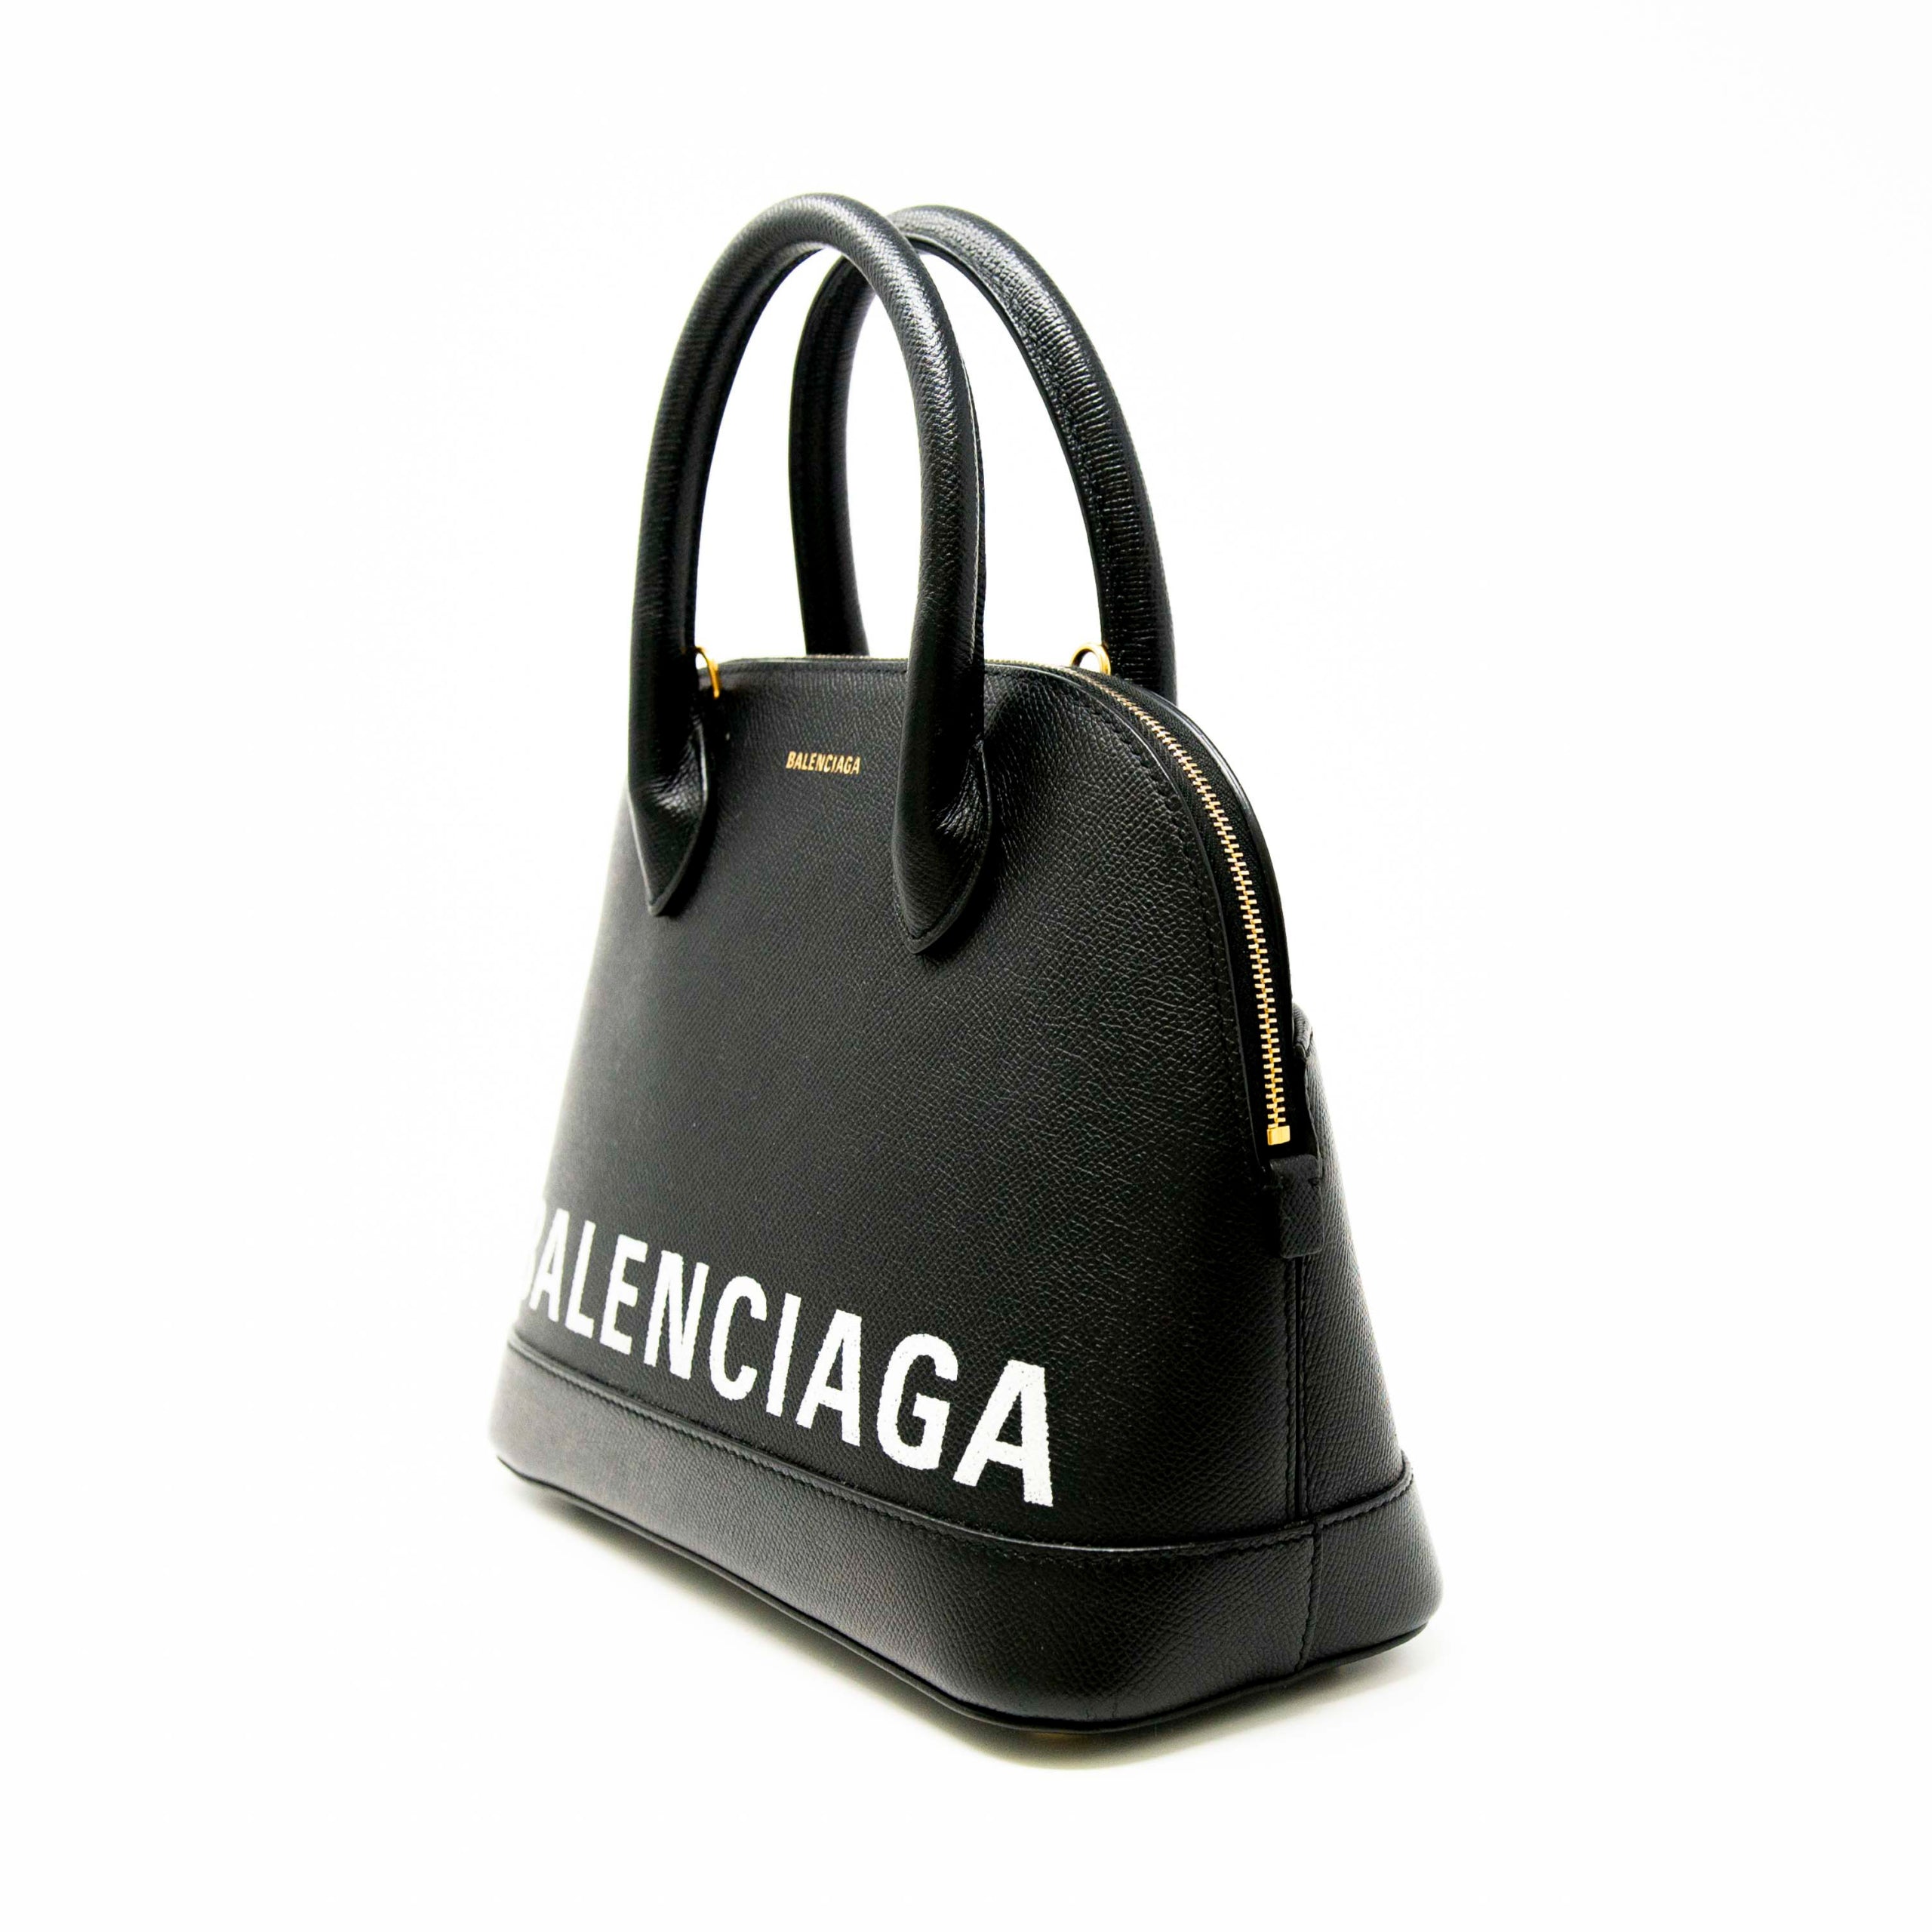 Balenciaga Black Small Ville Bag